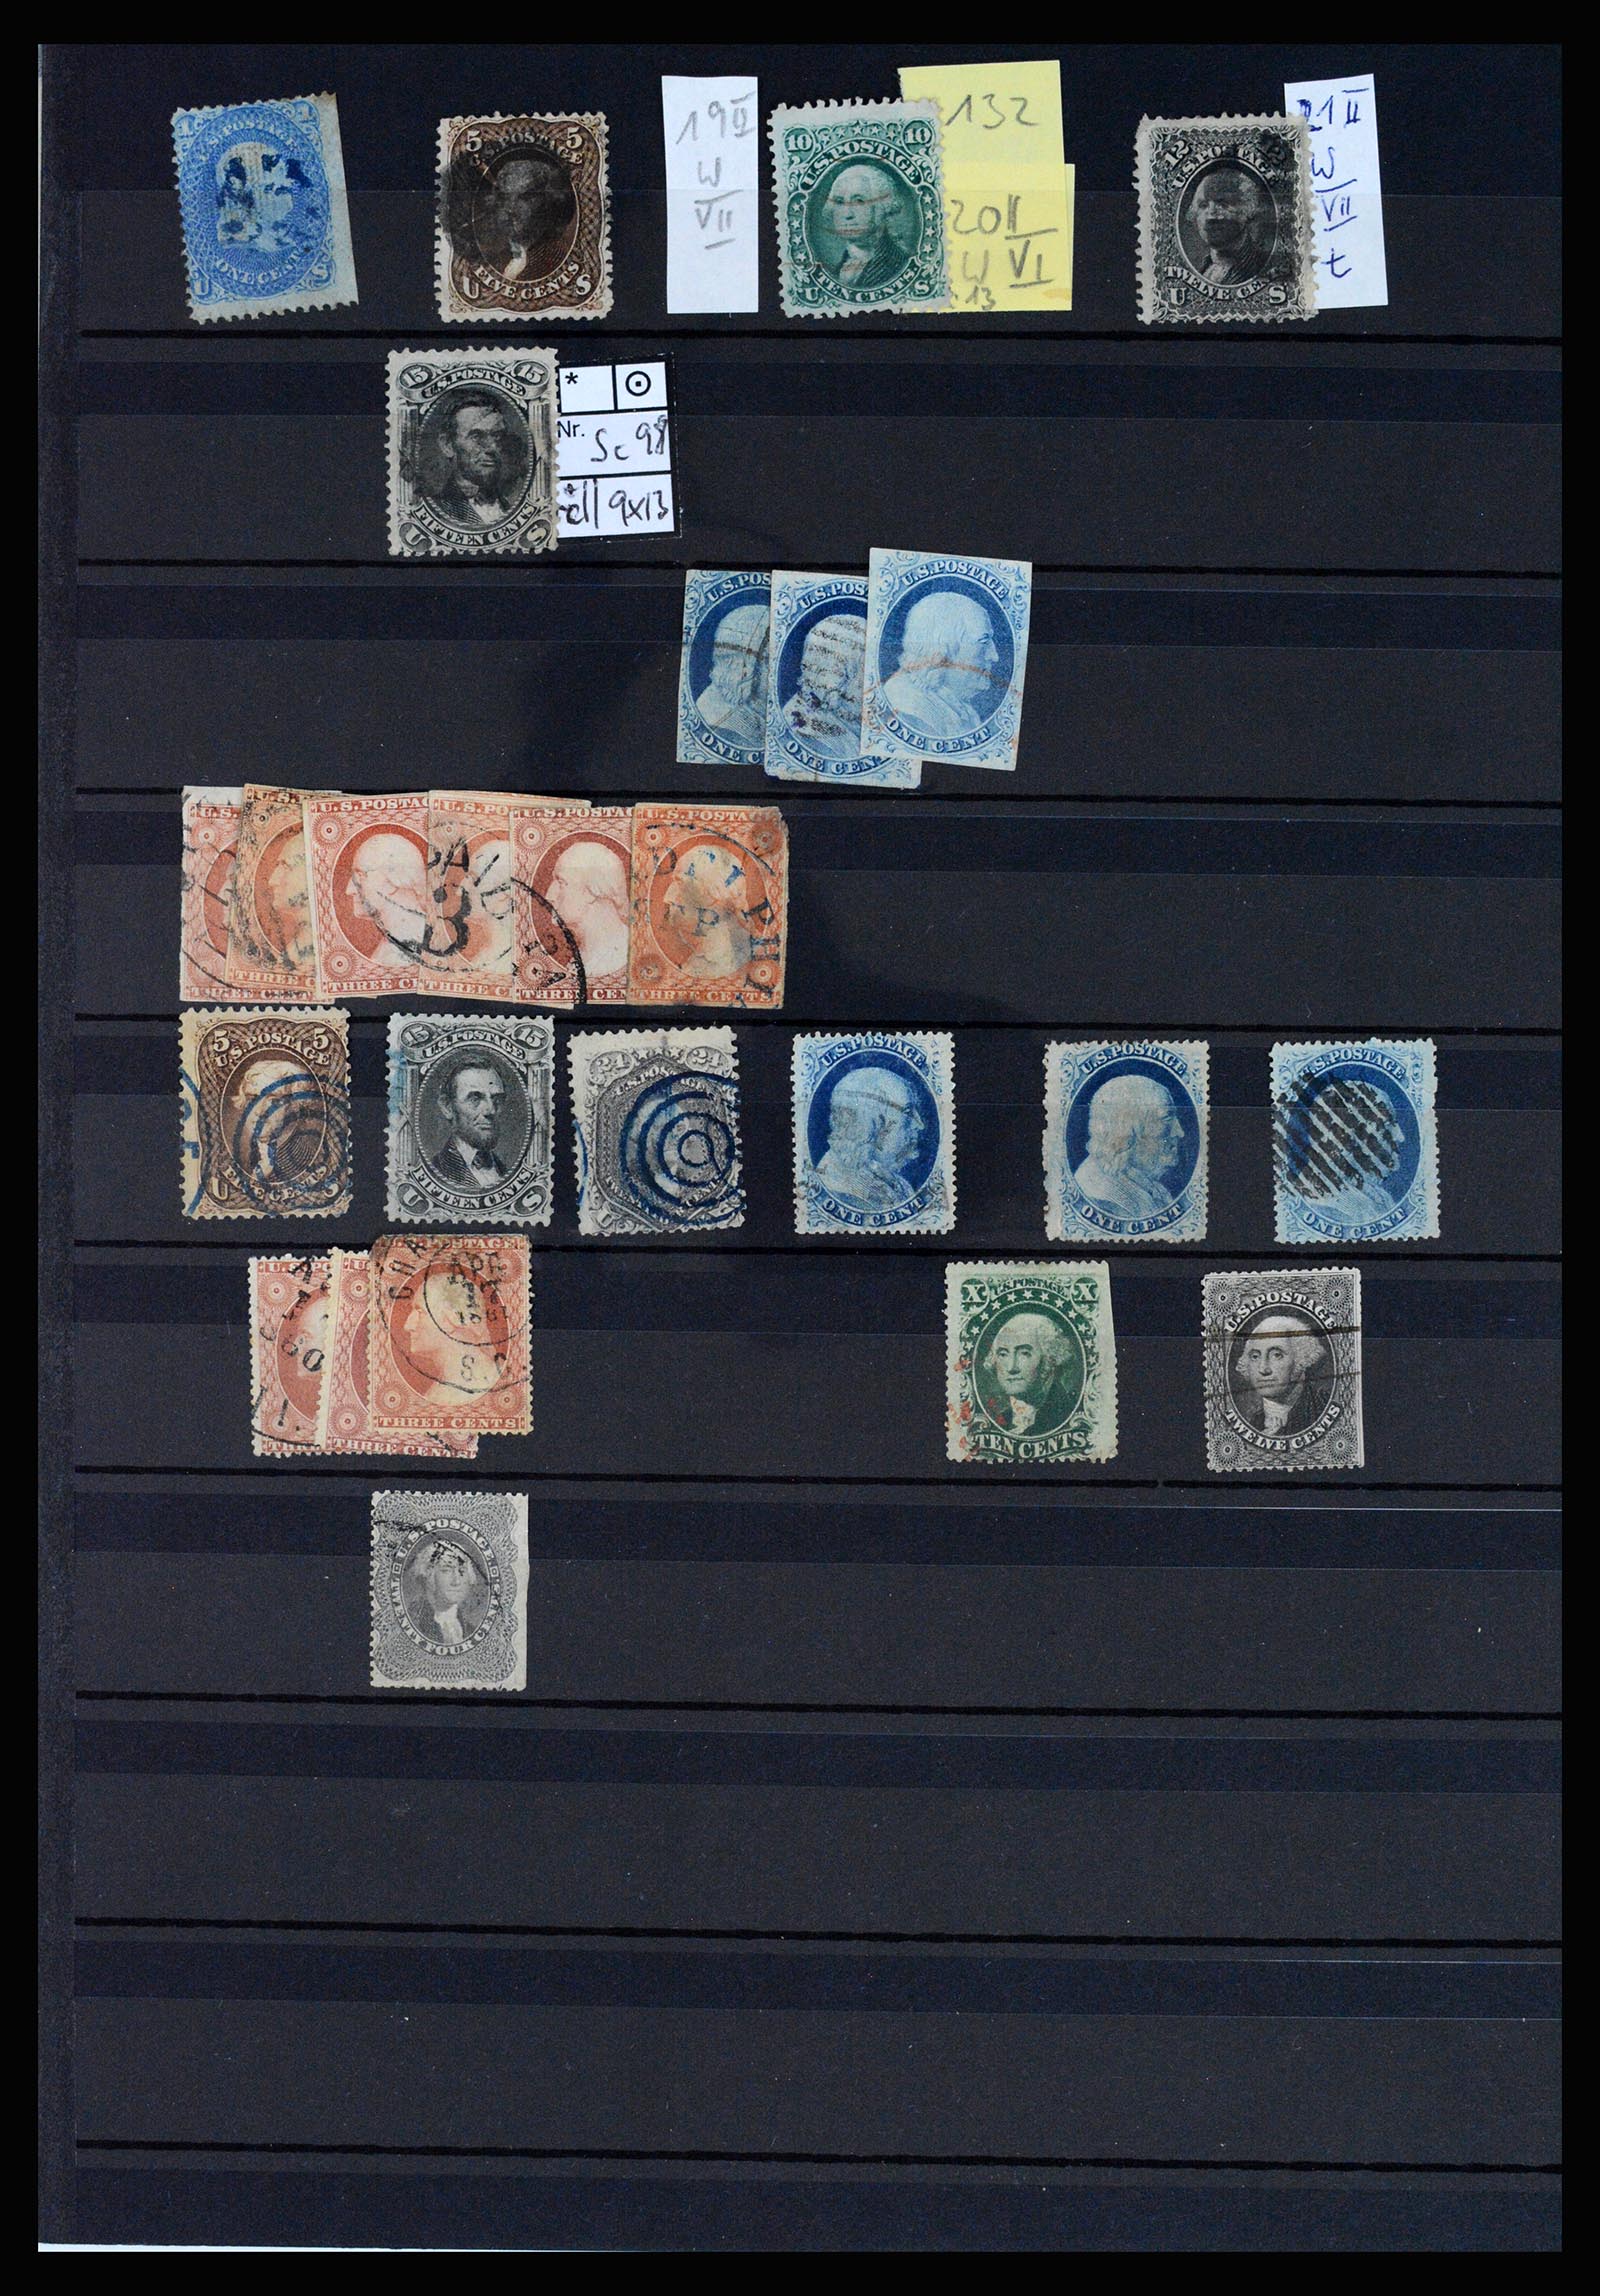 37136 014 - Stamp collection 37136 USA 1847-1960.